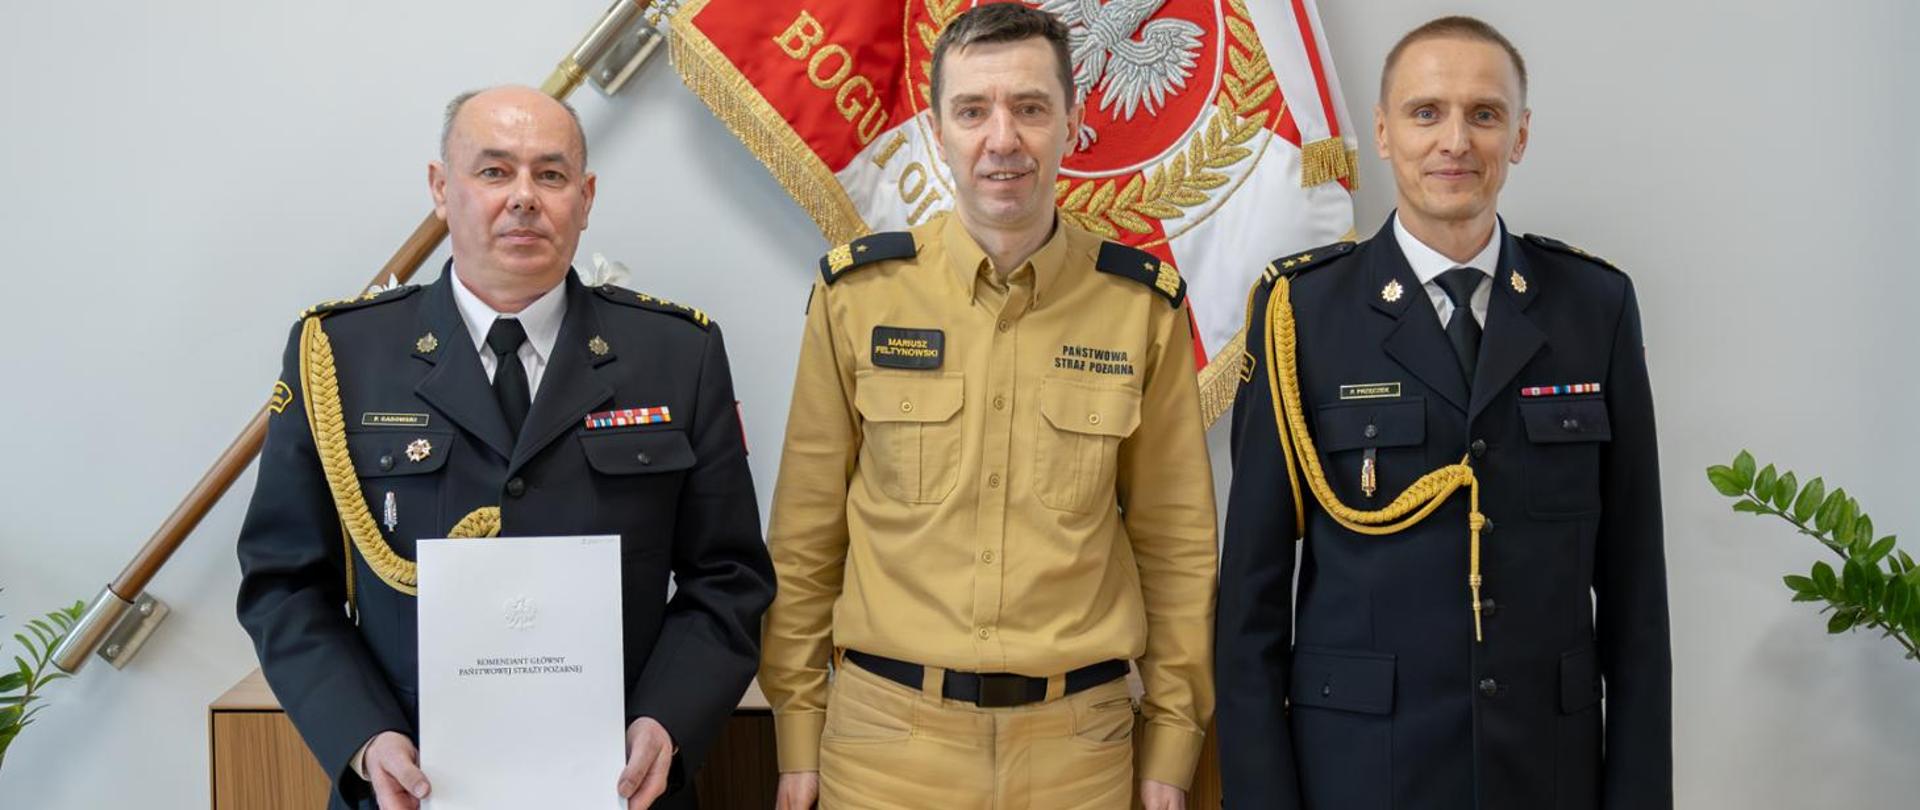 Komendant Główny PSP powierzył pełnienie obowiązków na stanowisku Zastępcy Małopolskiego Komendanta Wojewódzkiego PSP